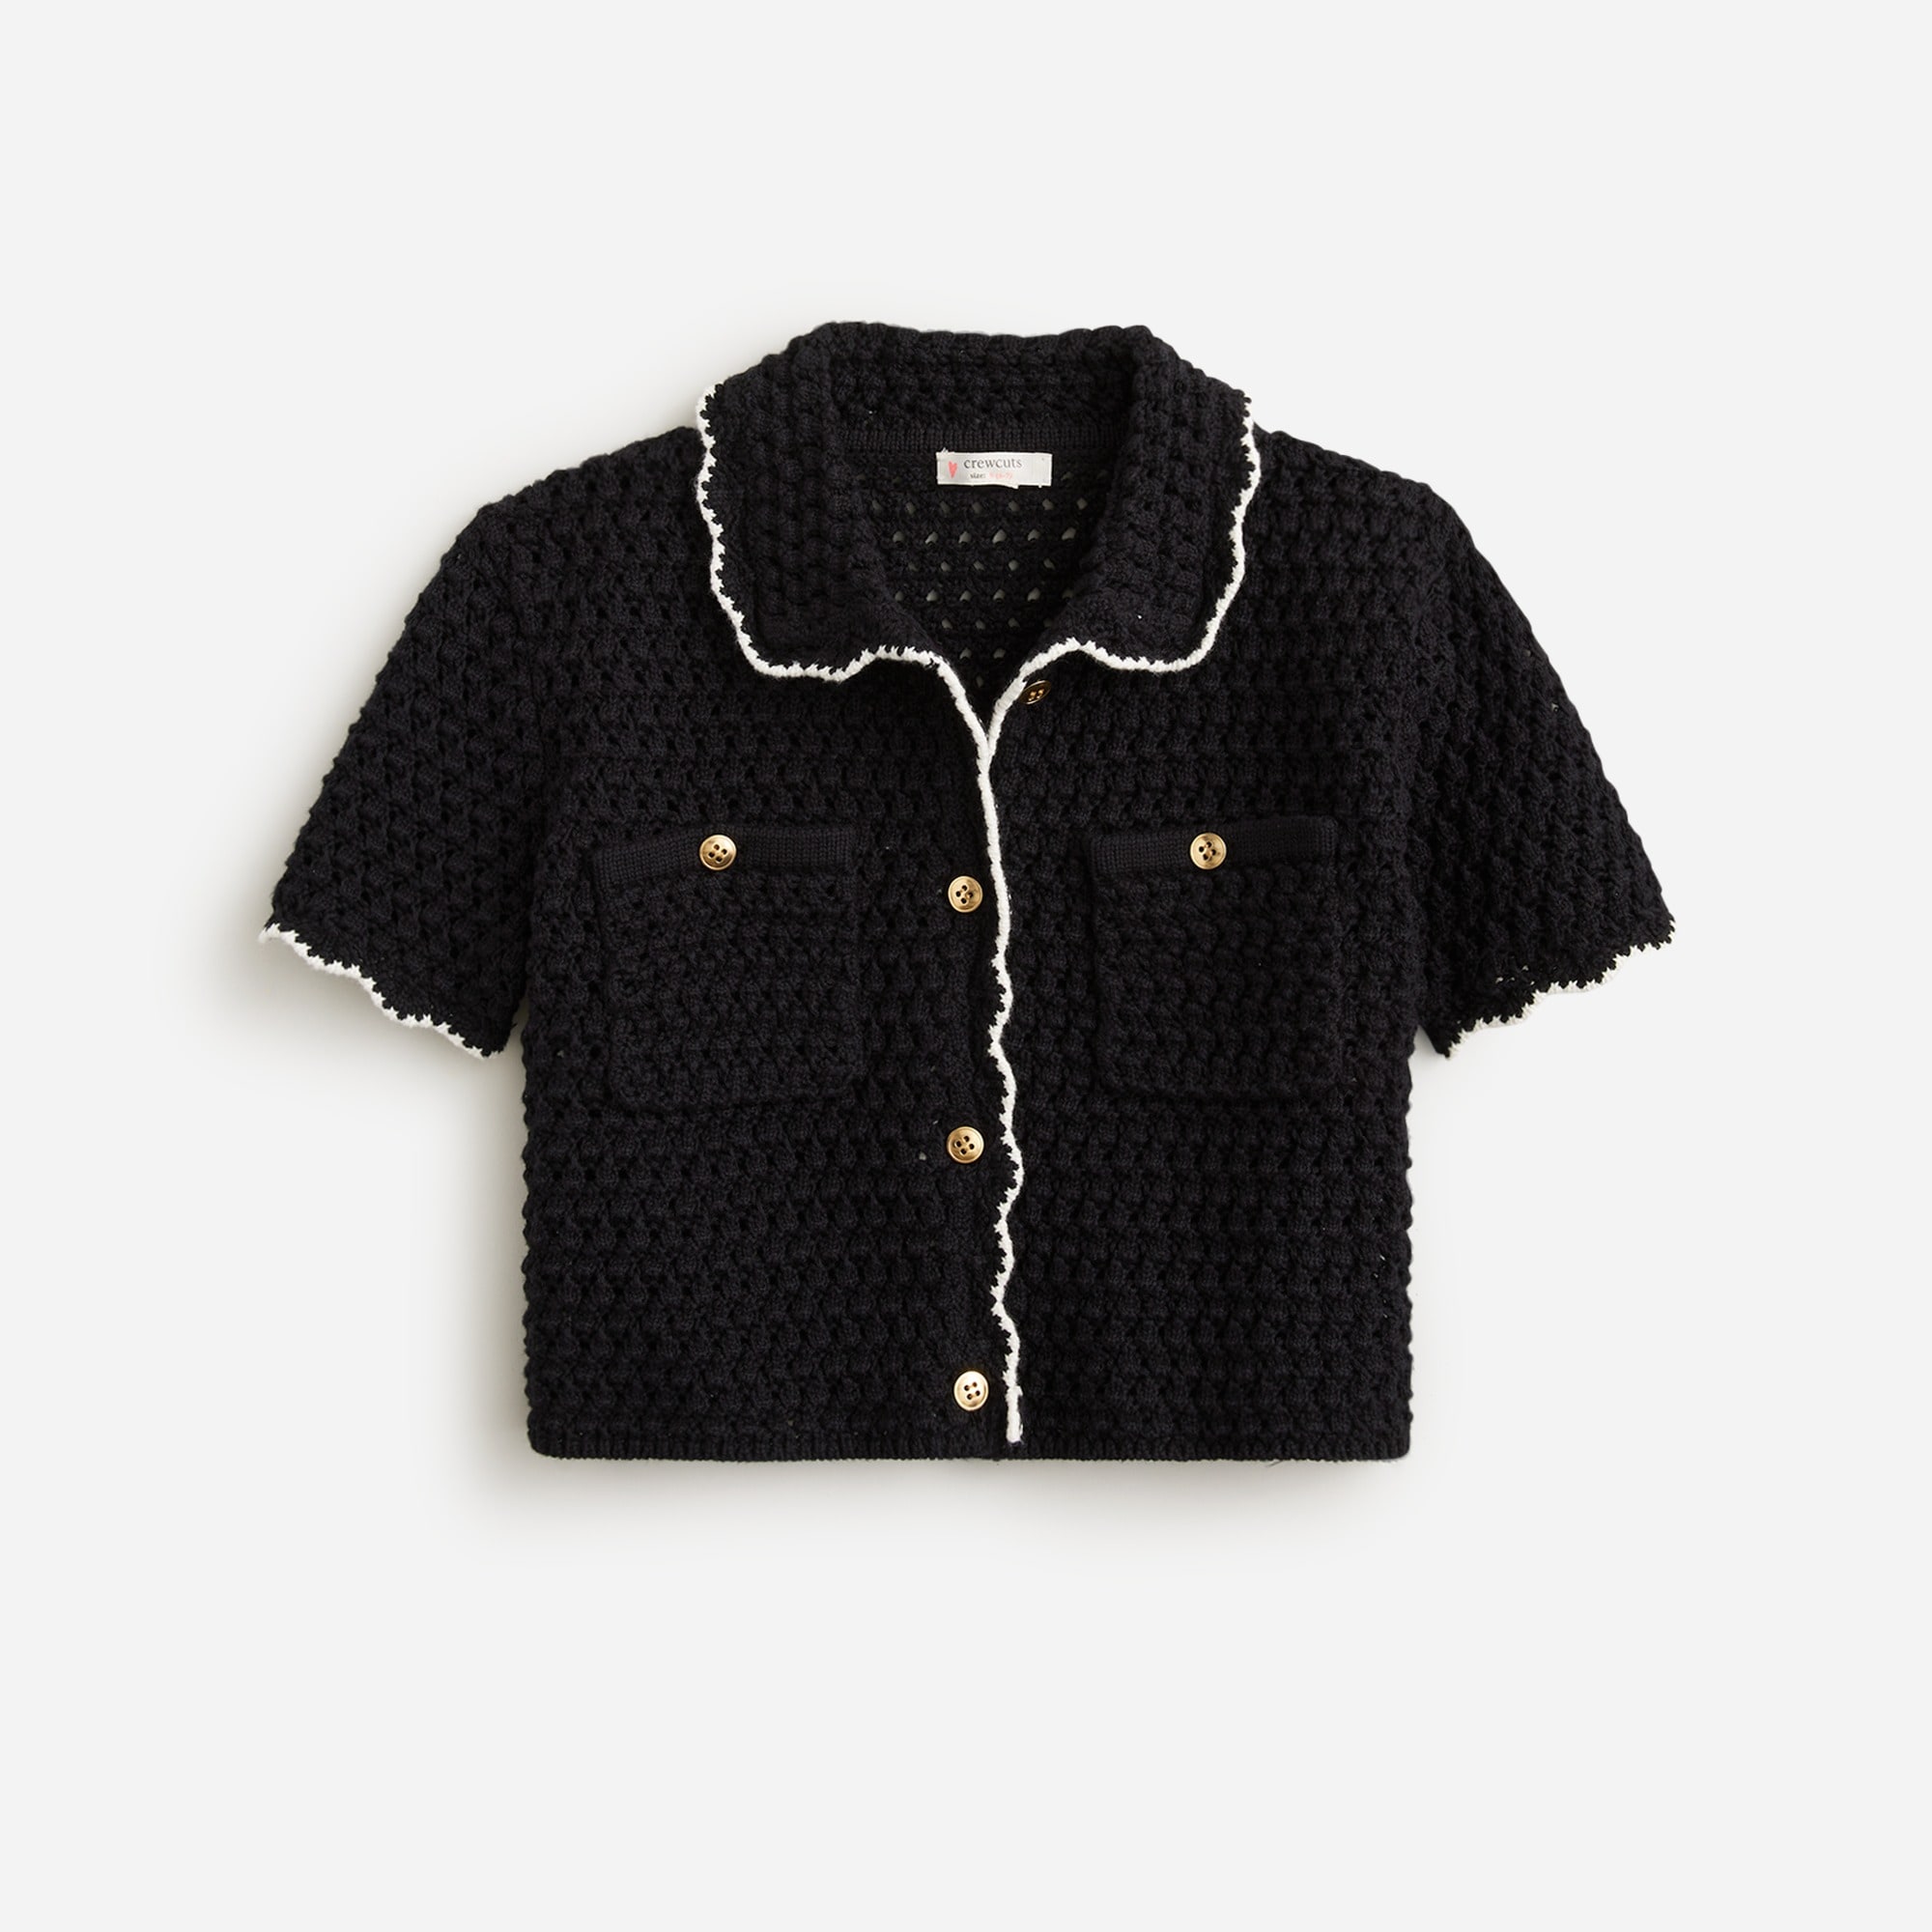  Girls' crochet button-up shirt